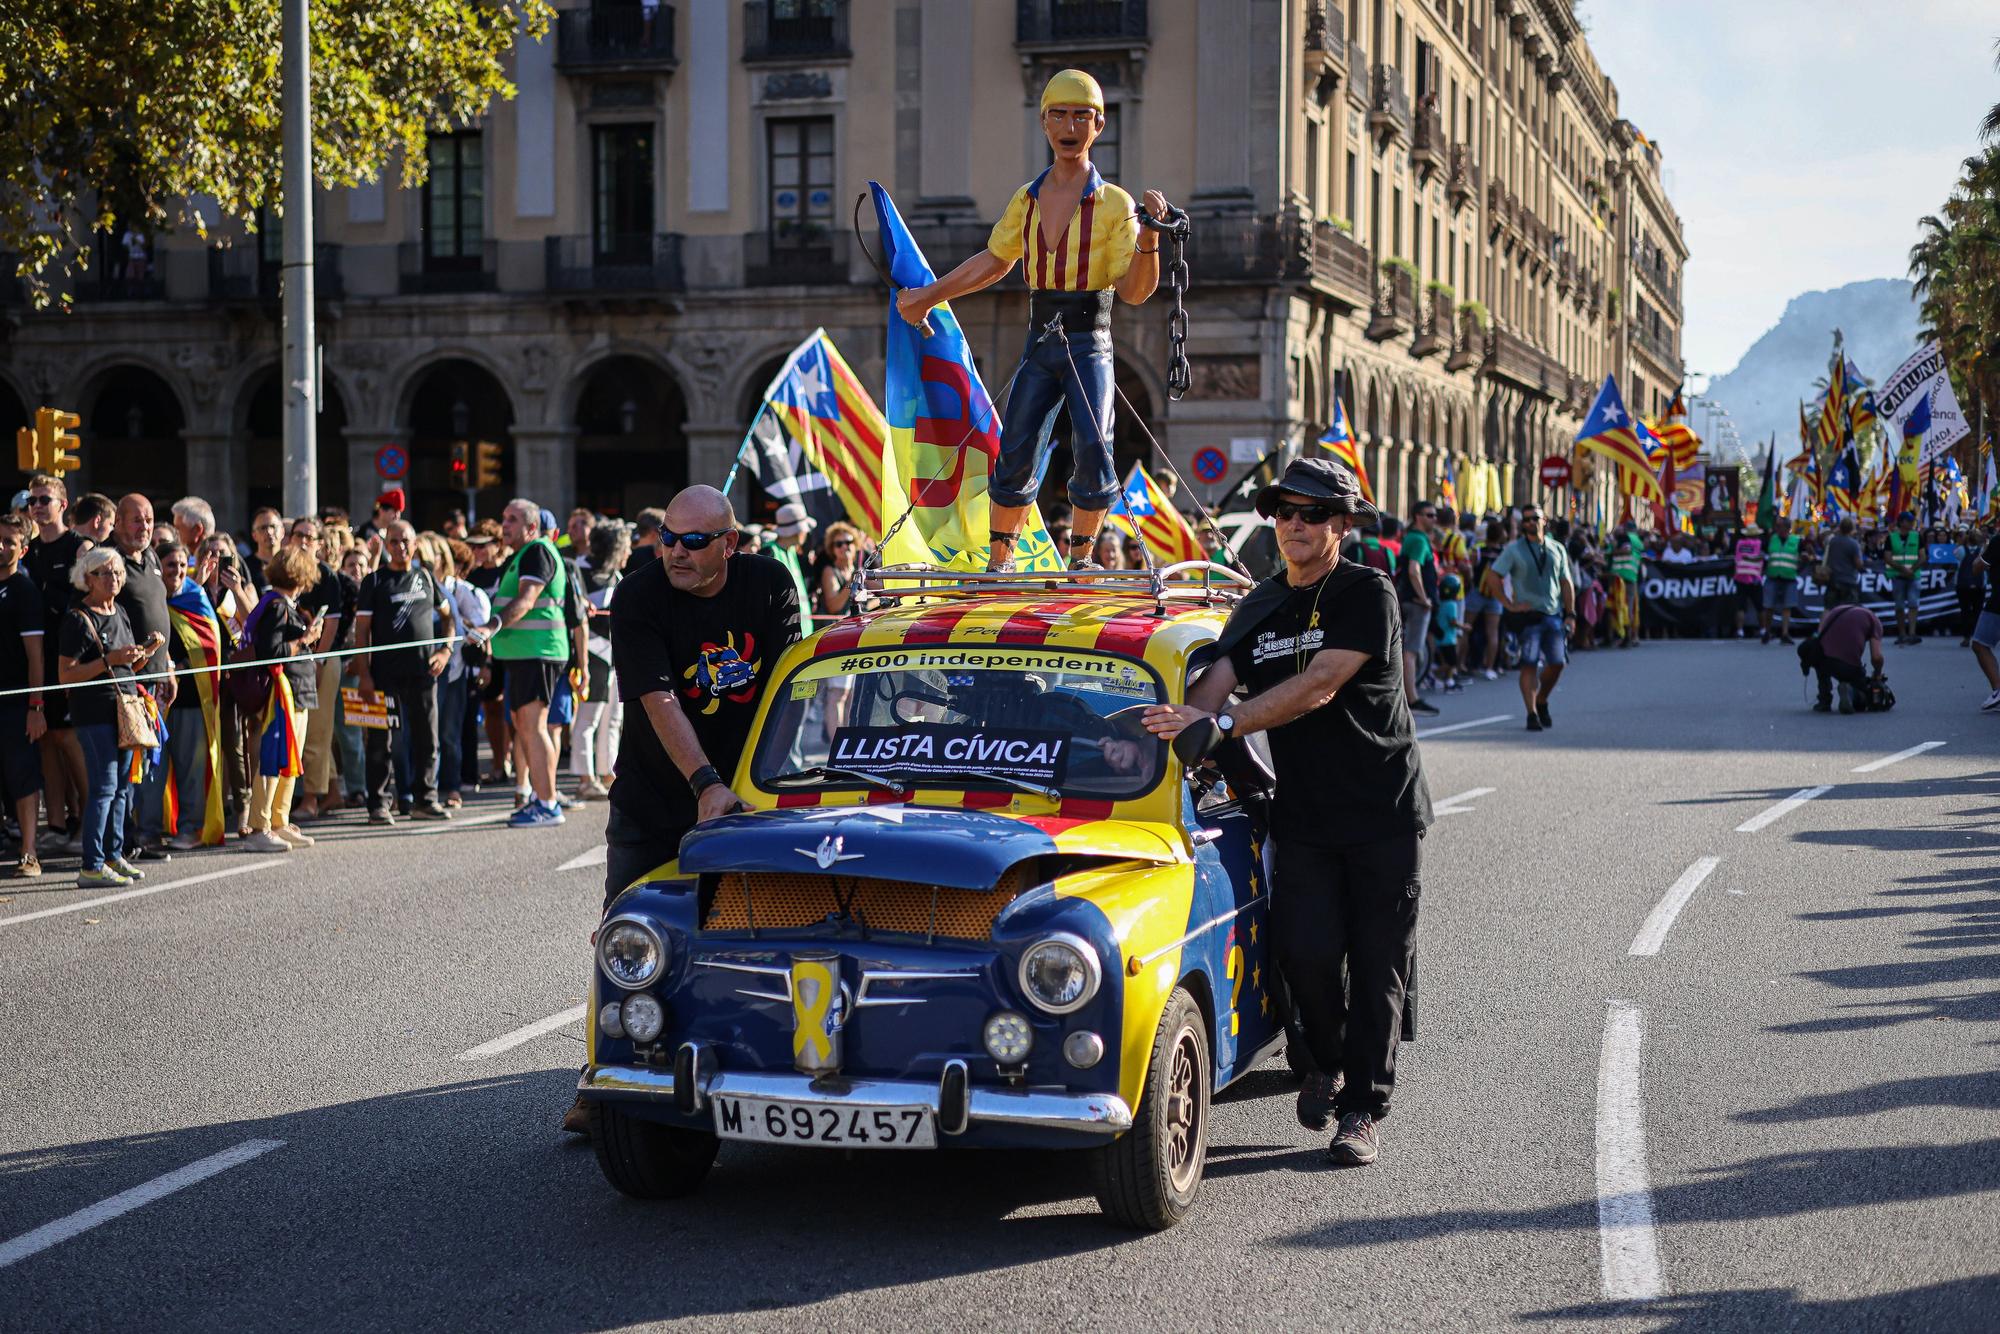 La Diada de Catalunya a Barcelona